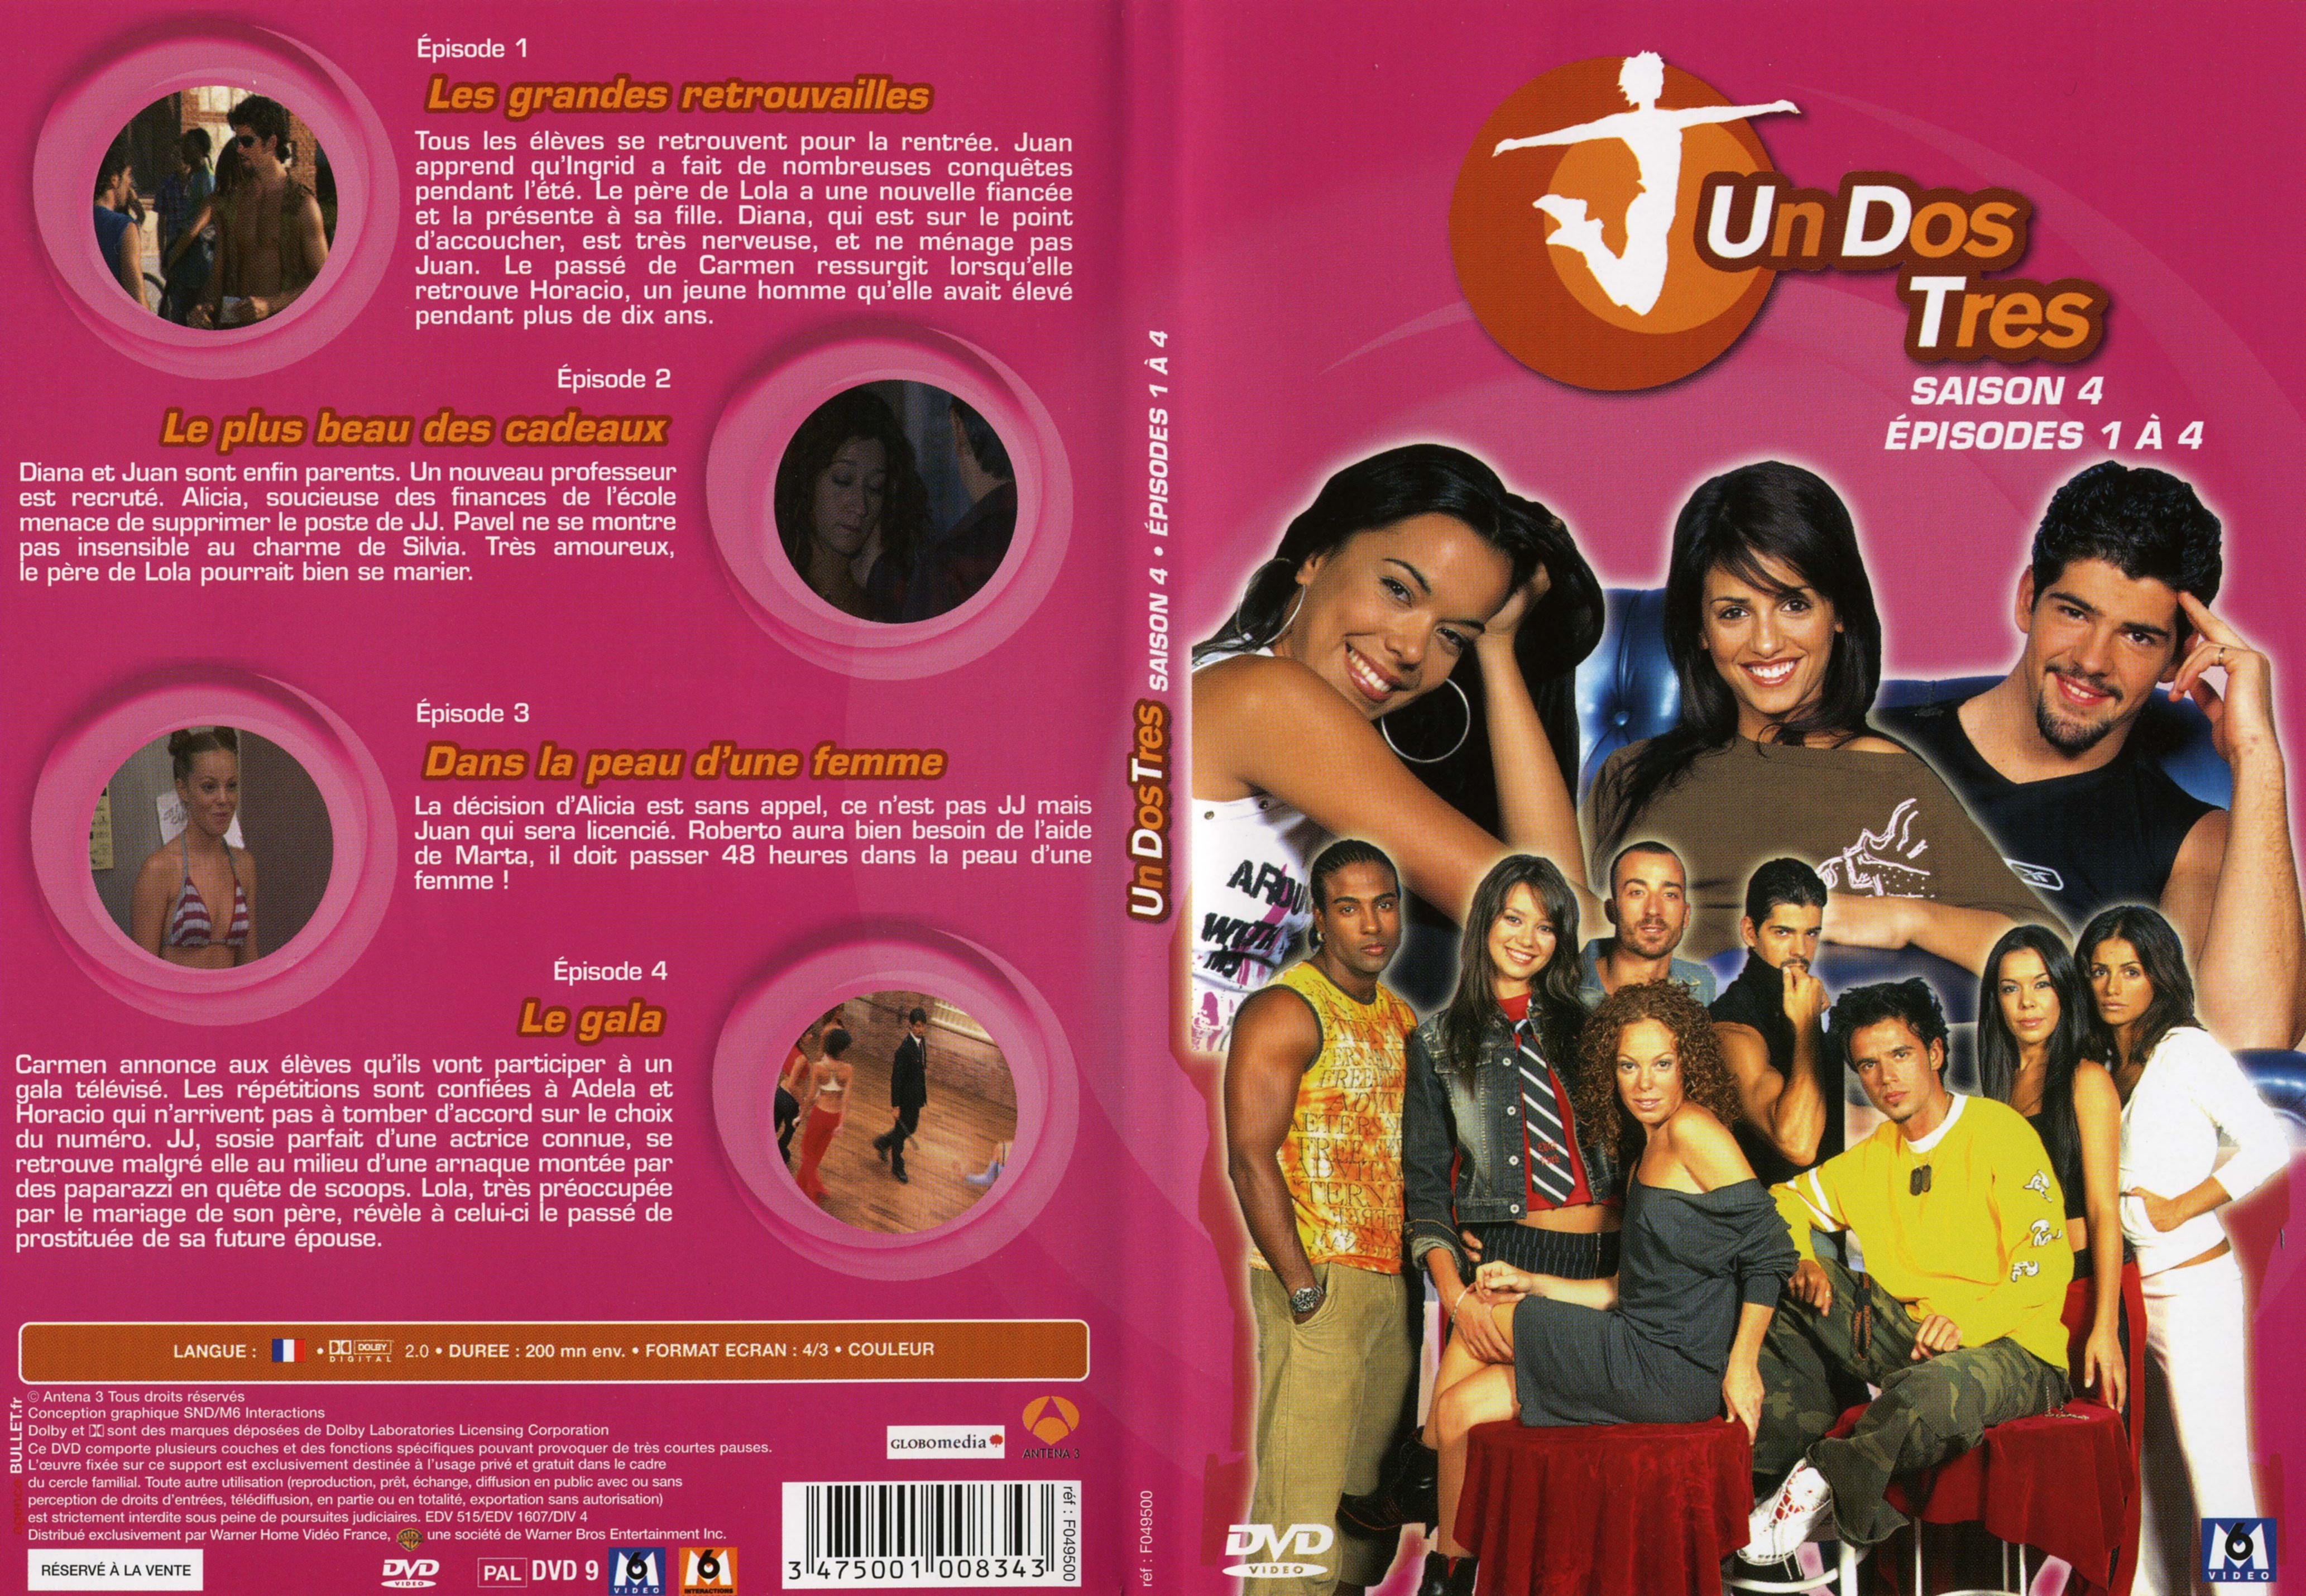 Jaquette DVD Un dos tres Saison 4 DVD 1